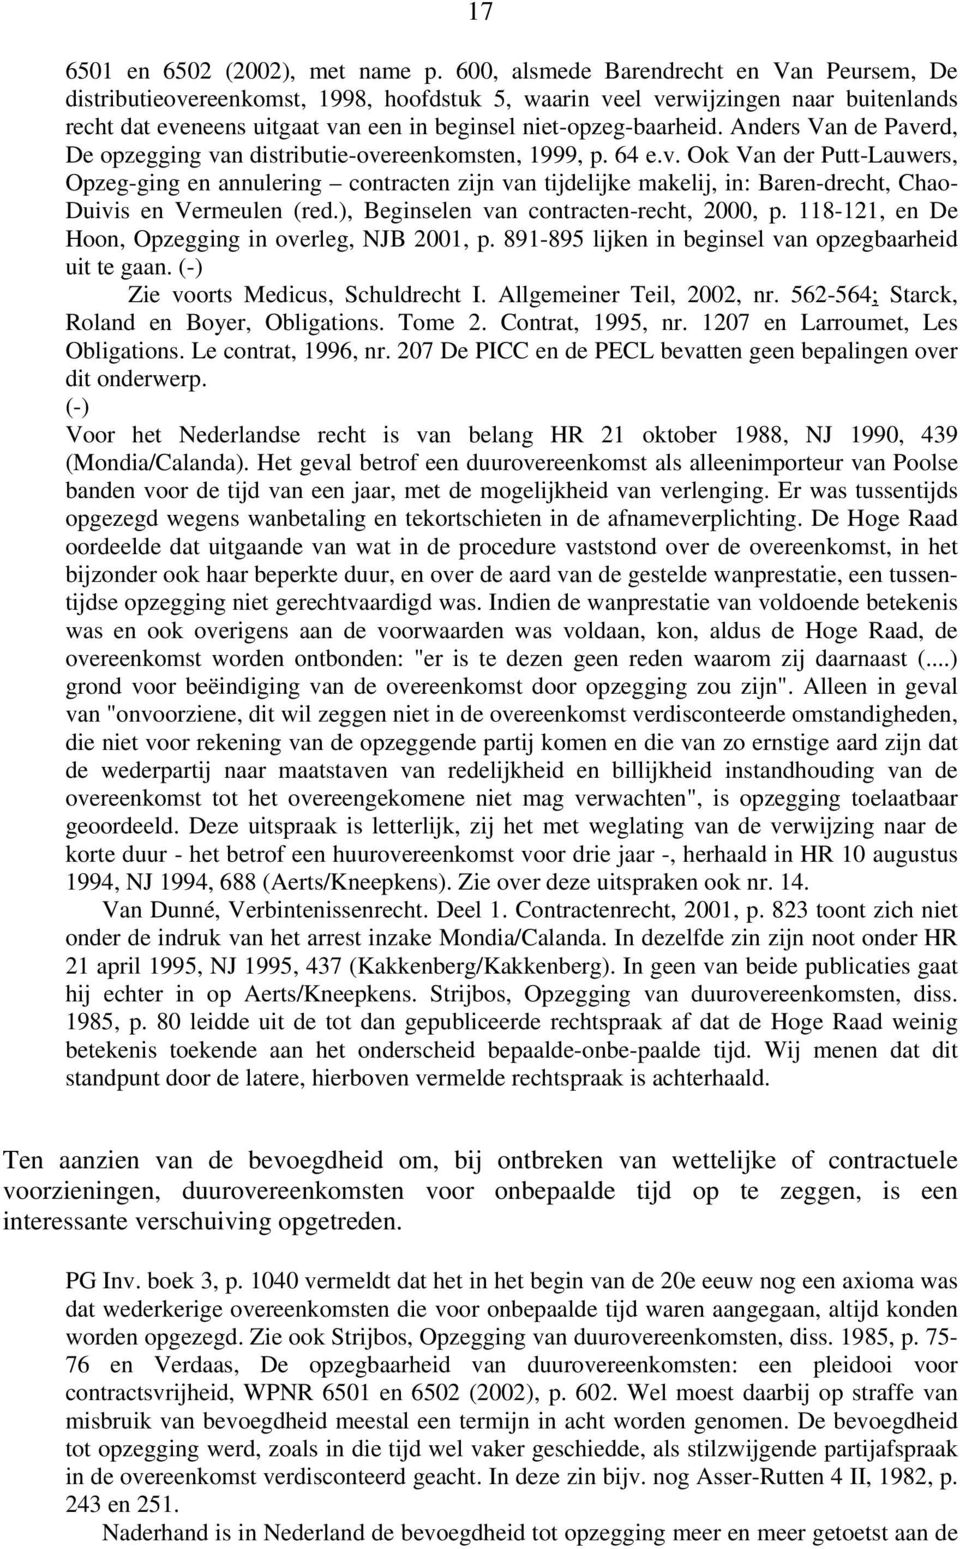 Anders Van de Paverd, De opzegging van distributie-overeenkomsten, 1999, p. 64 e.v. Ook Van der Putt-Lauwers, Opzeg-ging en annulering contracten zijn van tijdelijke makelij, in: Baren-drecht, Chao- Duivis en Vermeulen (red.